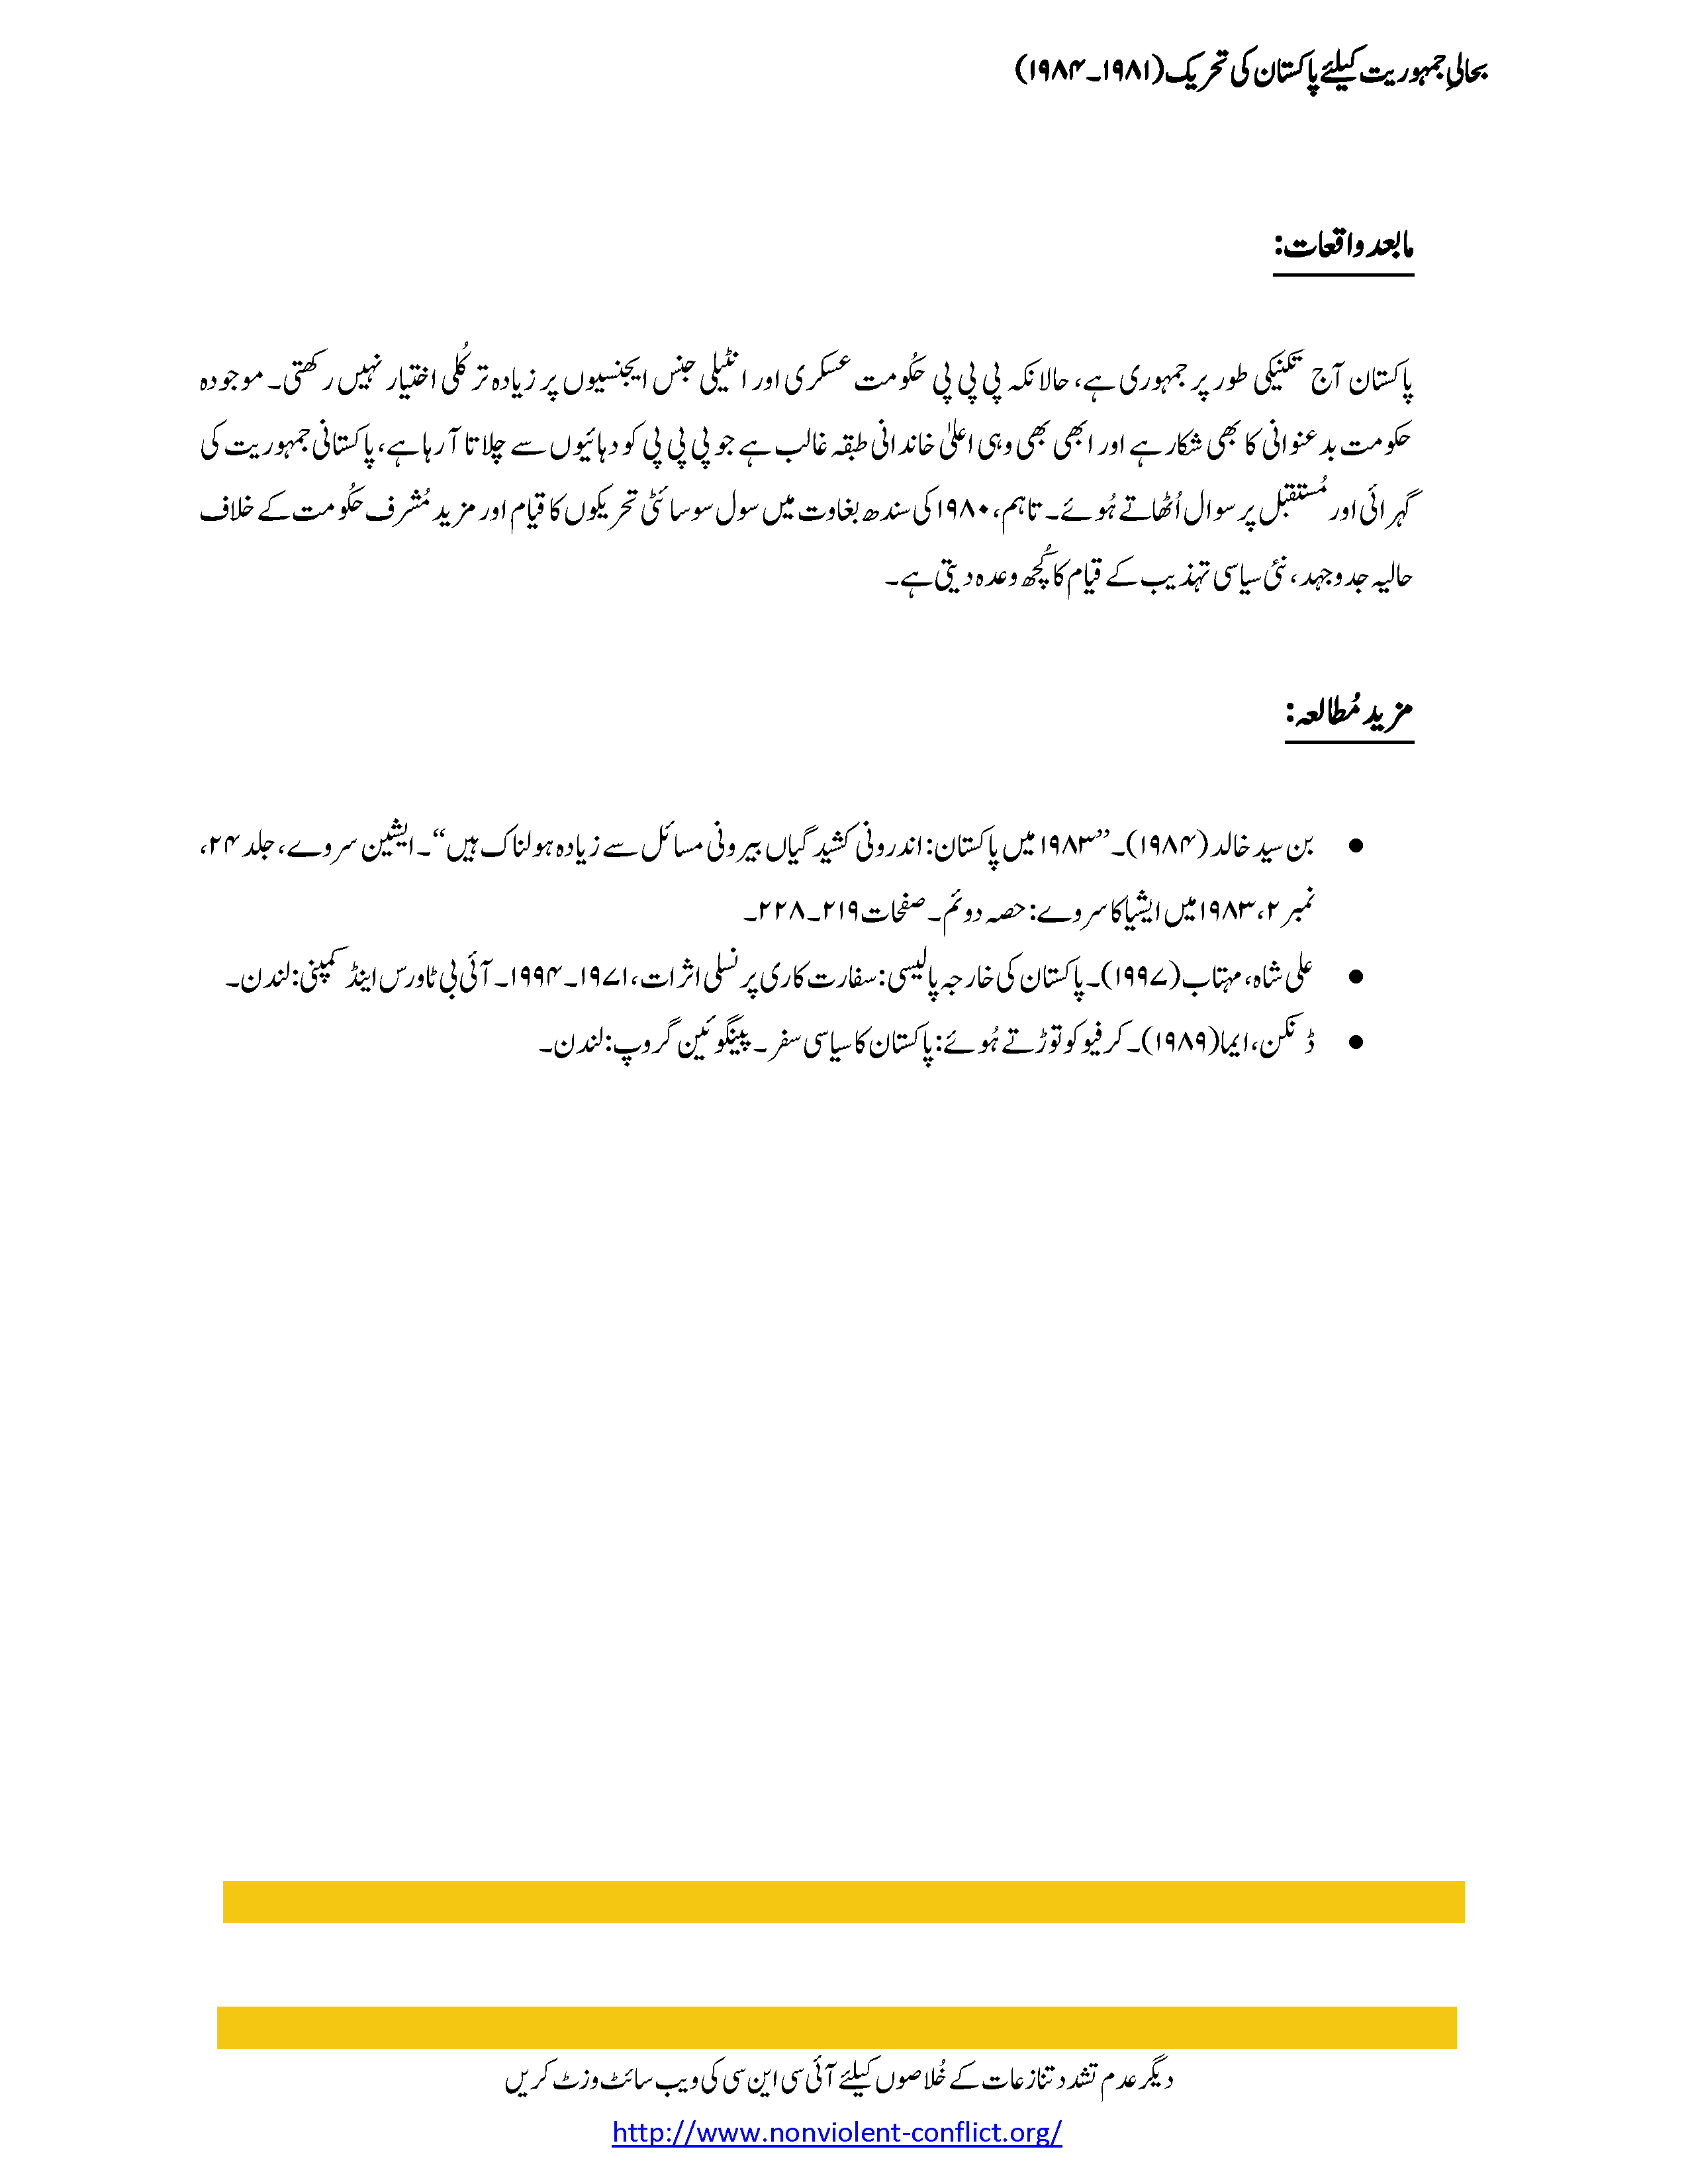 essay on democracy in pakistan in urdu